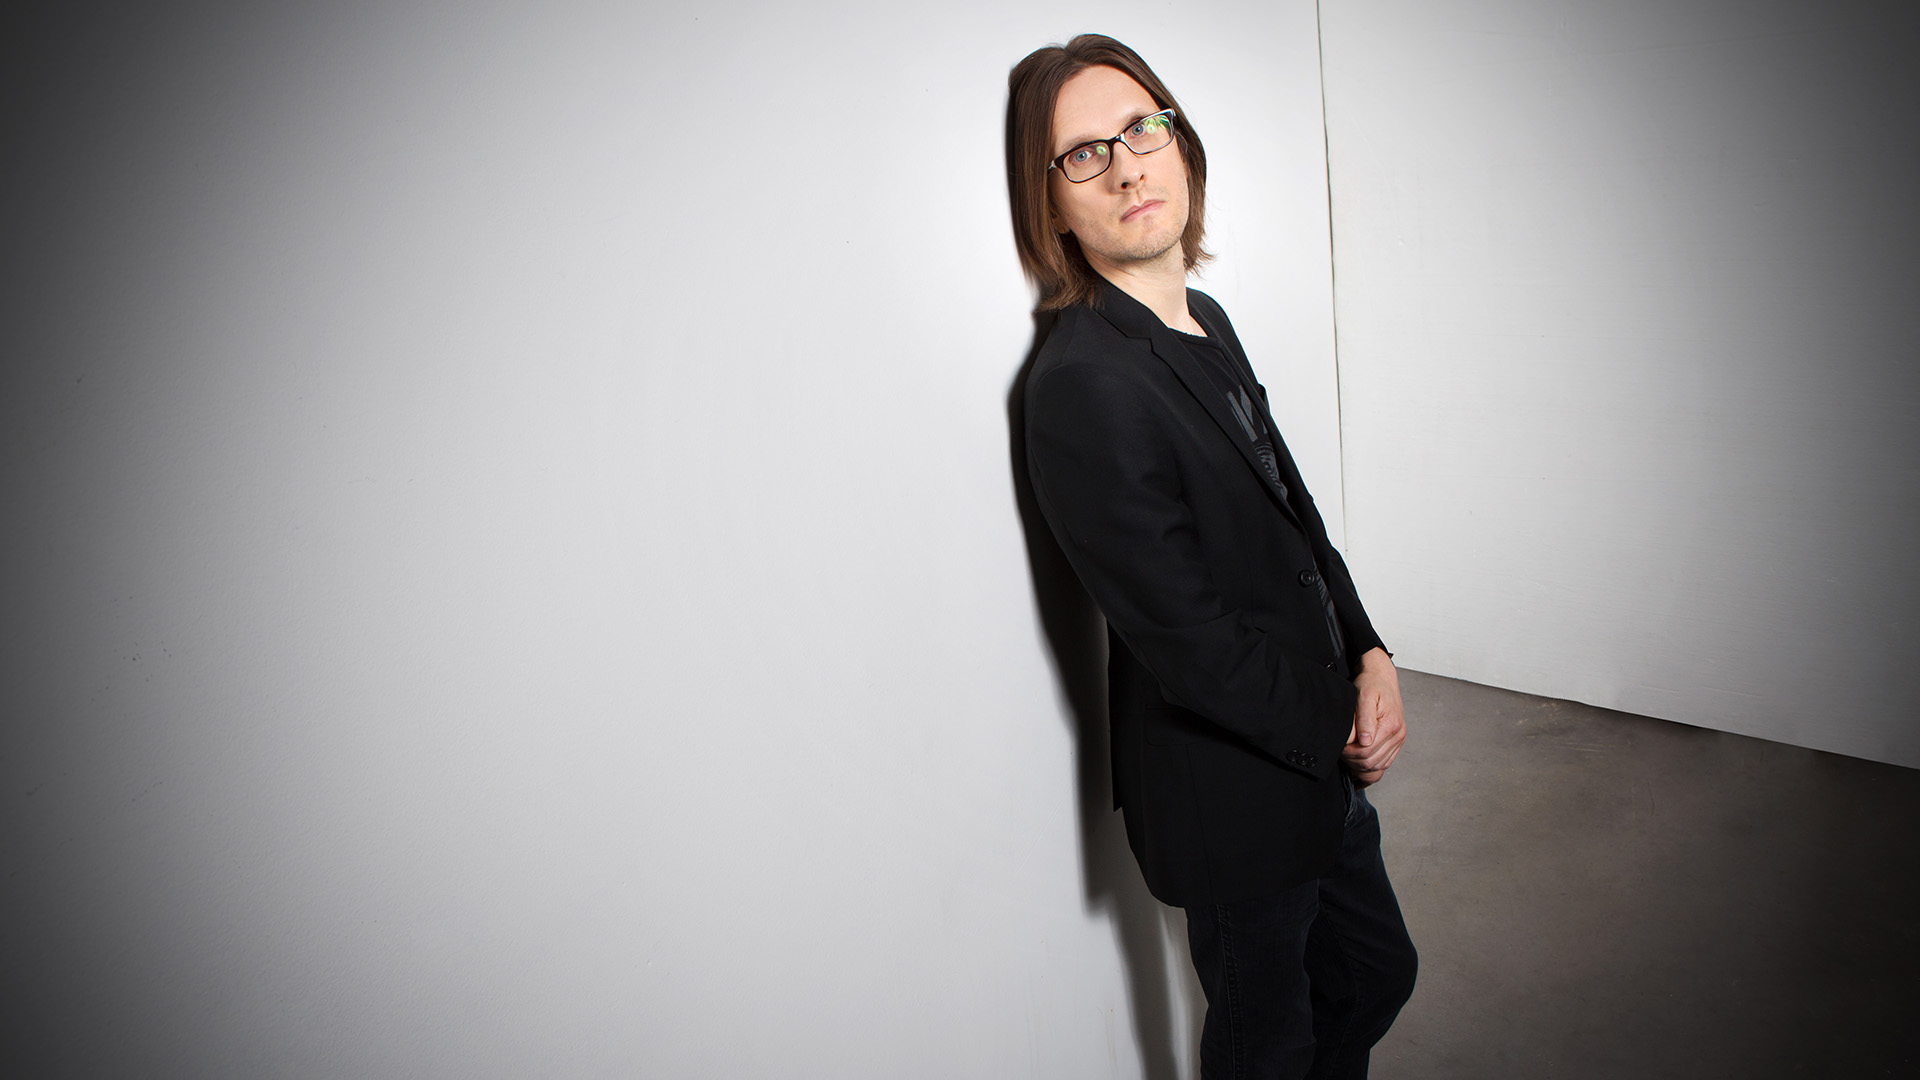 Steven Wilson Music Fanart Tv